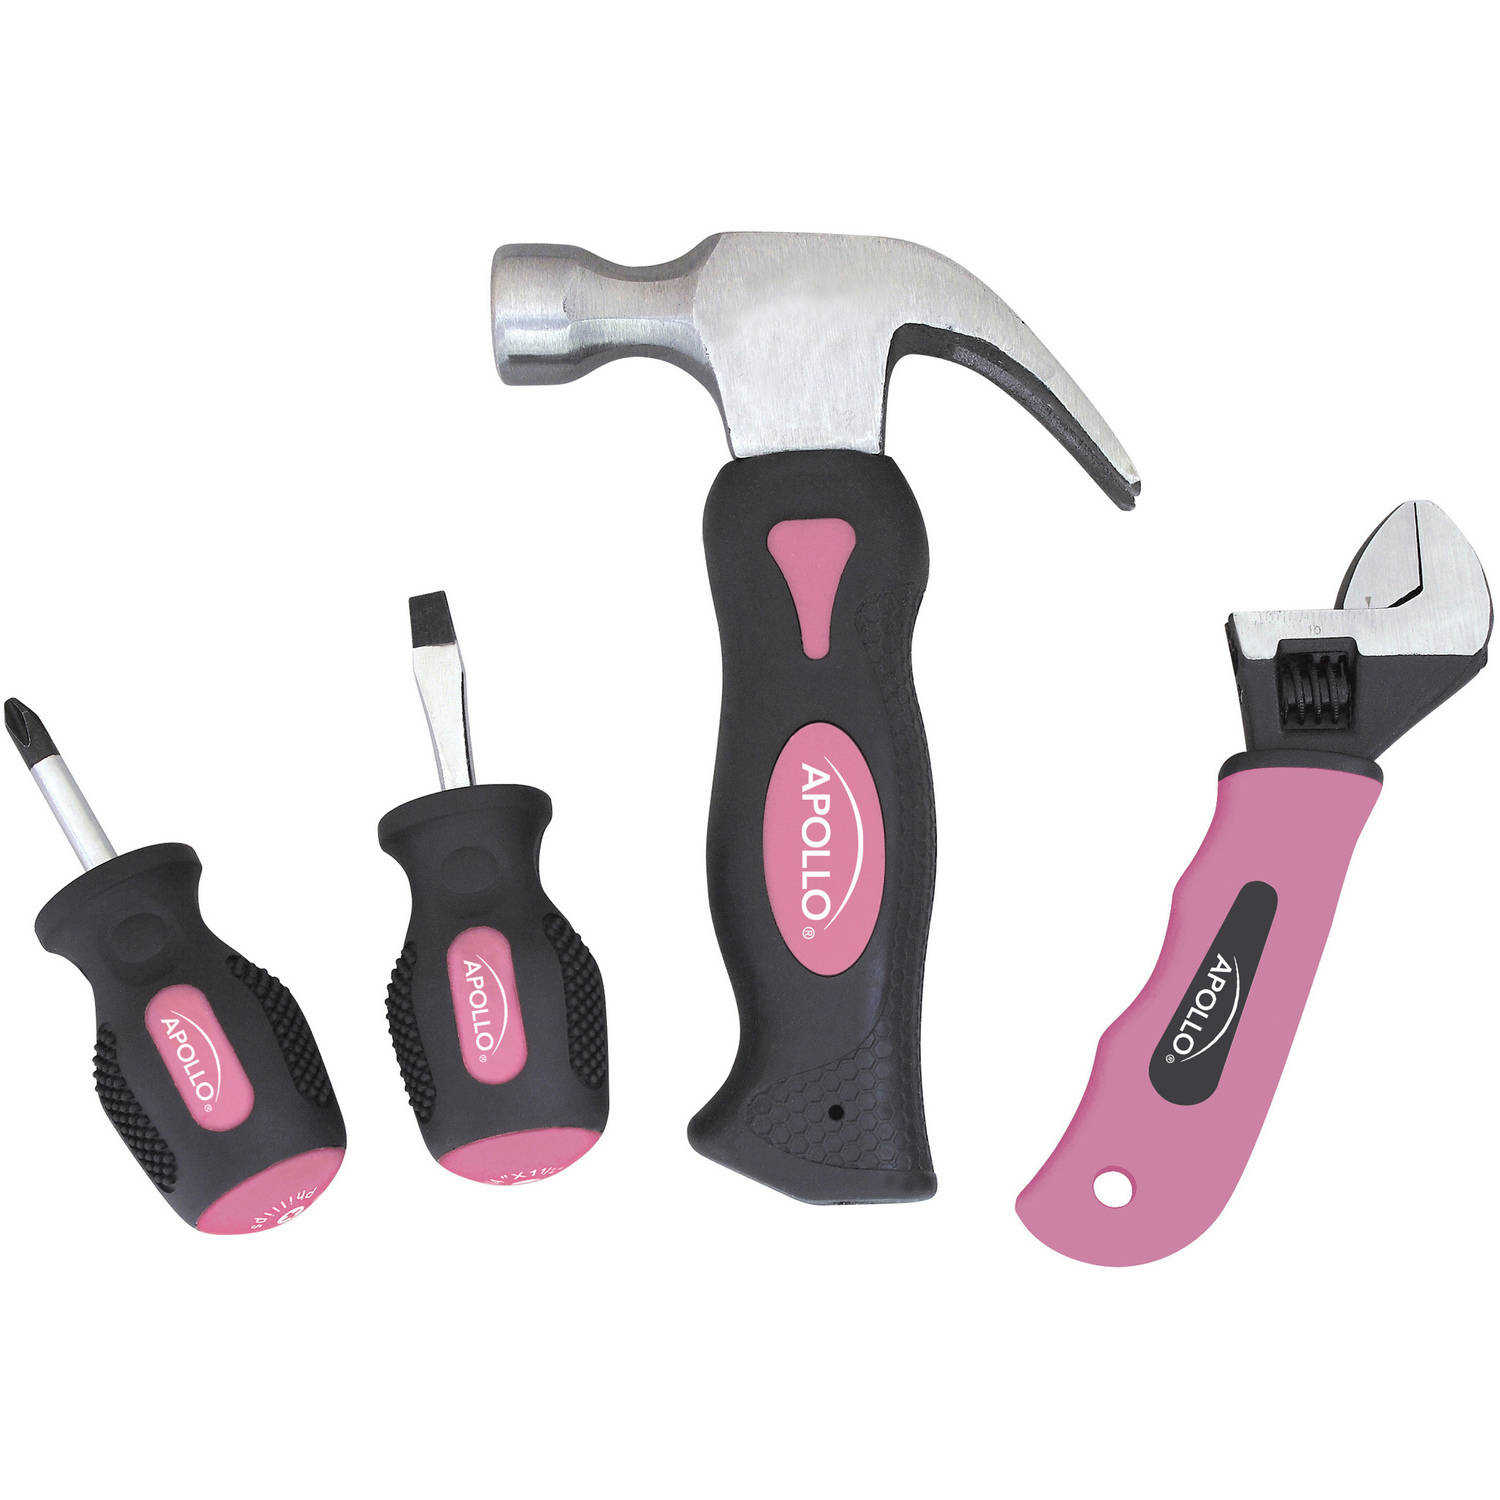 Apollo Precision Tools 4-Piece Stubby Tool Set, Pink